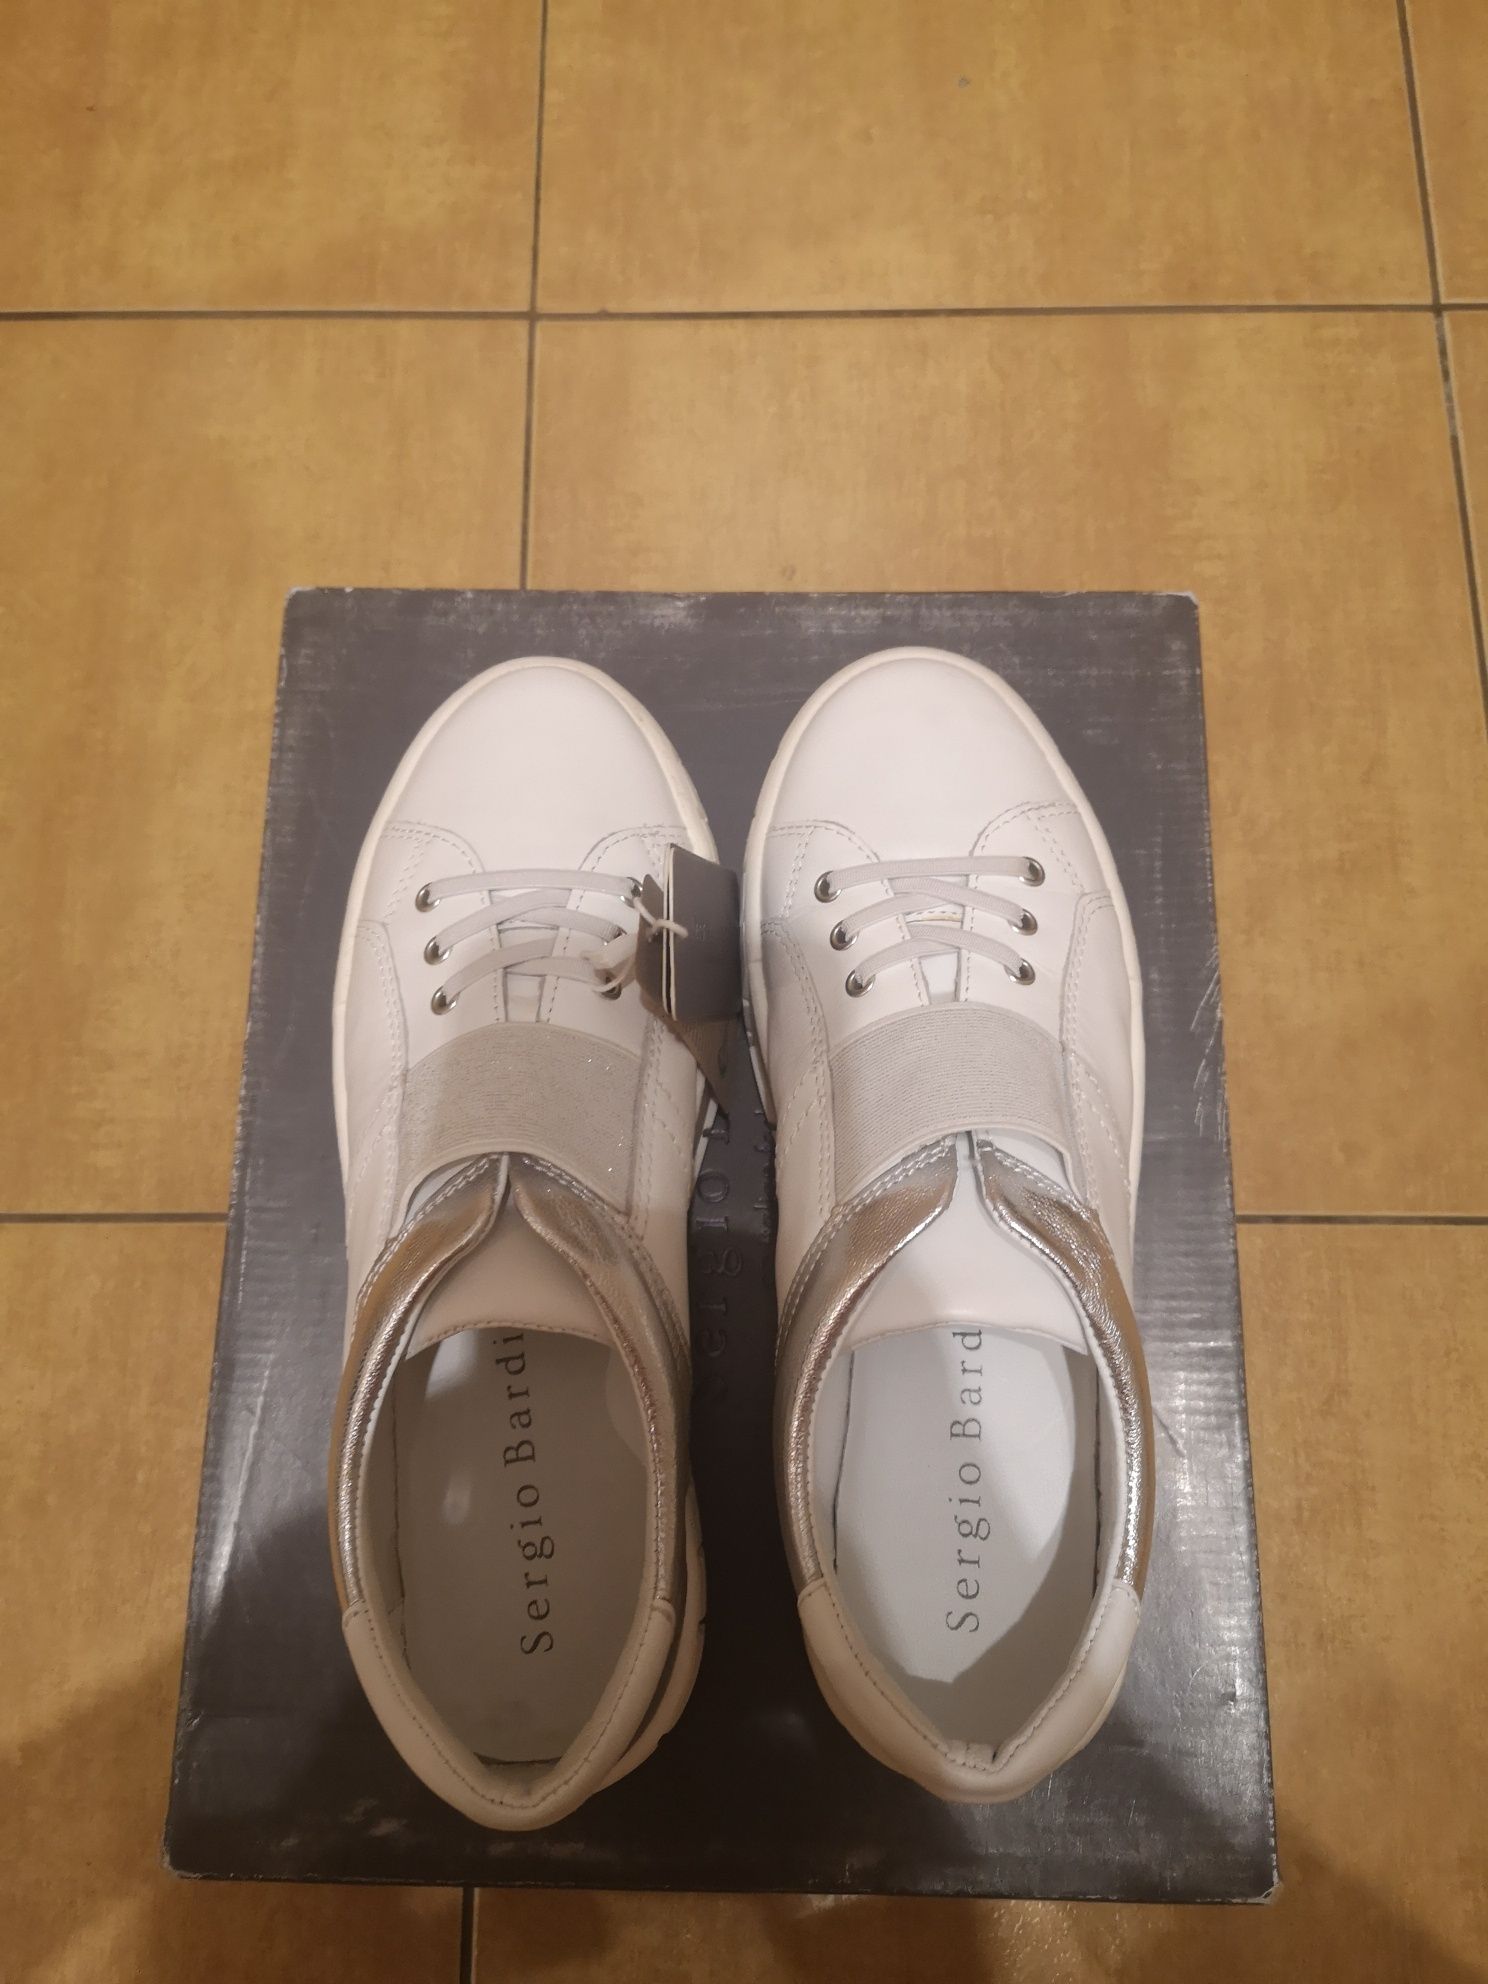 Nowe buty półbuty Sneakersy damskie skórzane białe. Rozmiar 38.